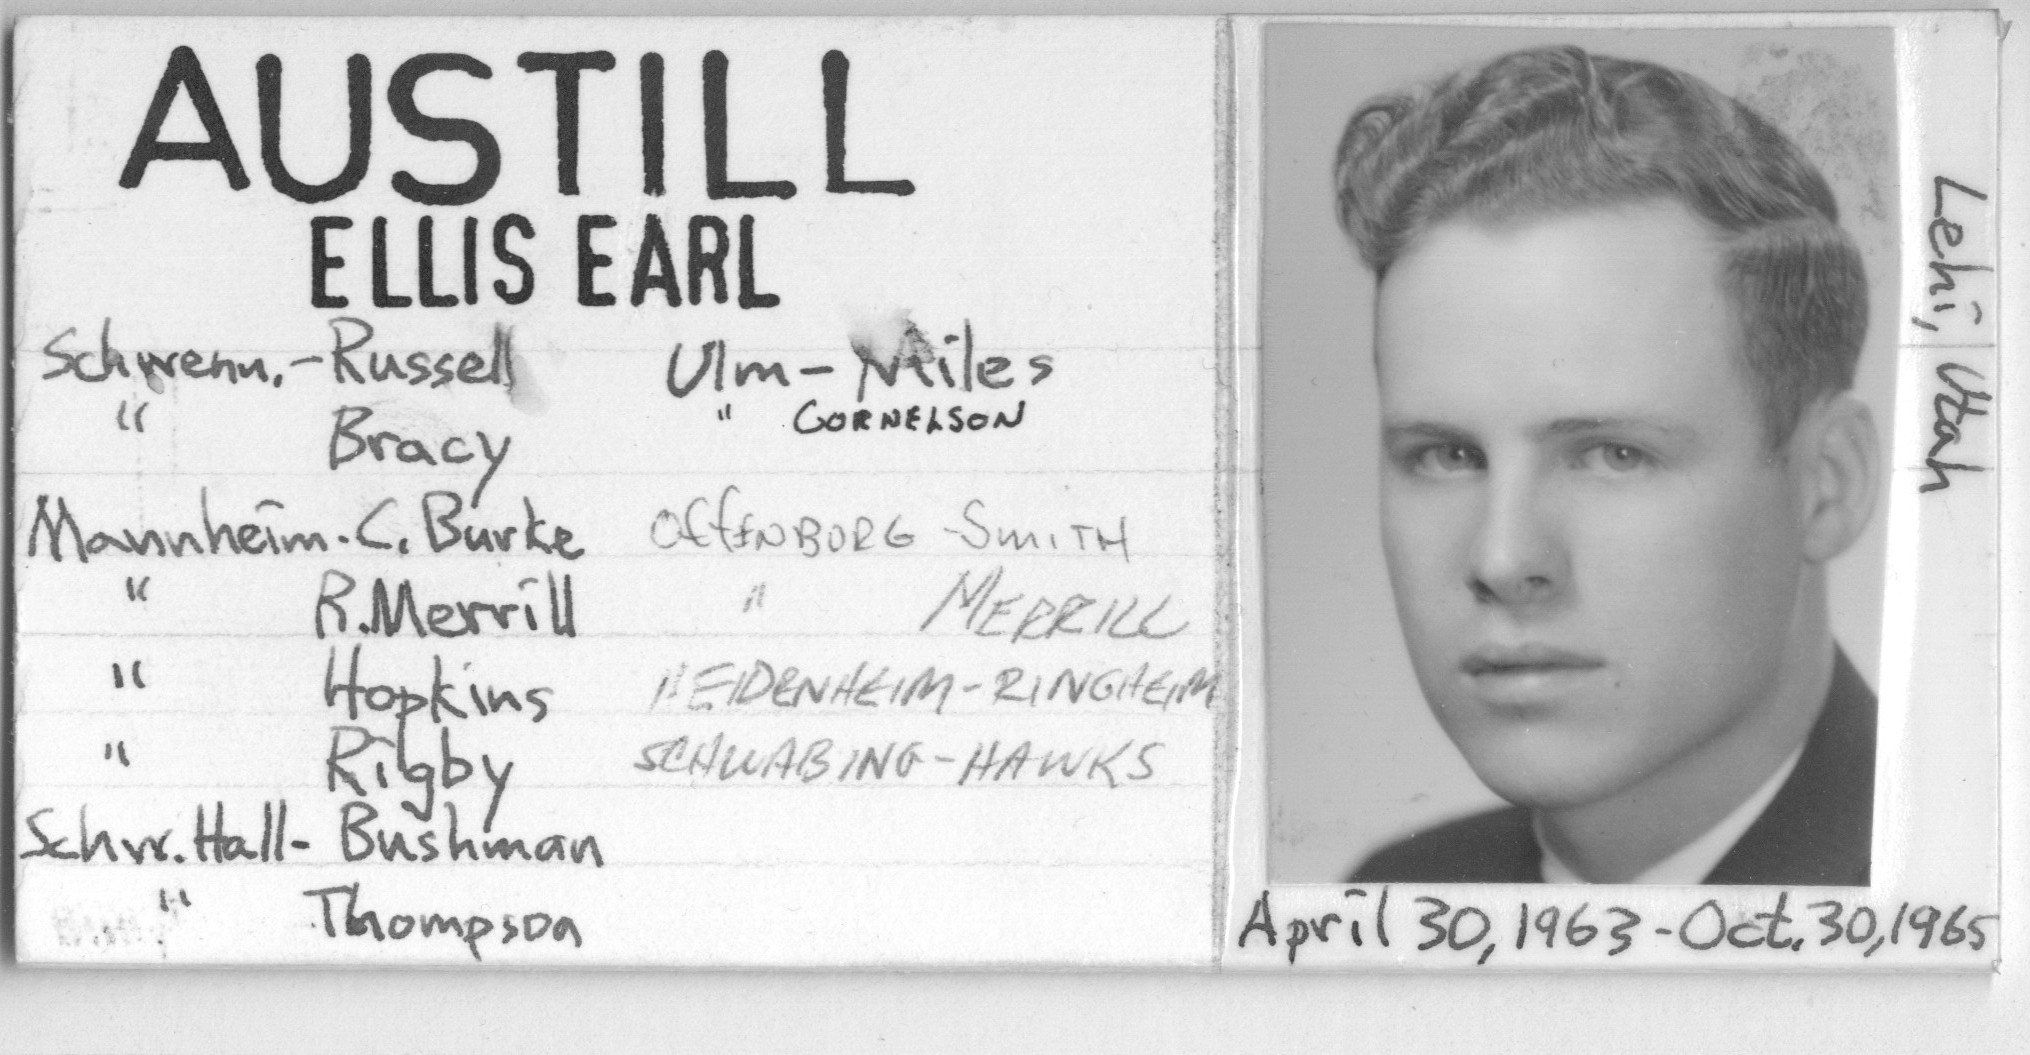 Austill, Ellis Earl